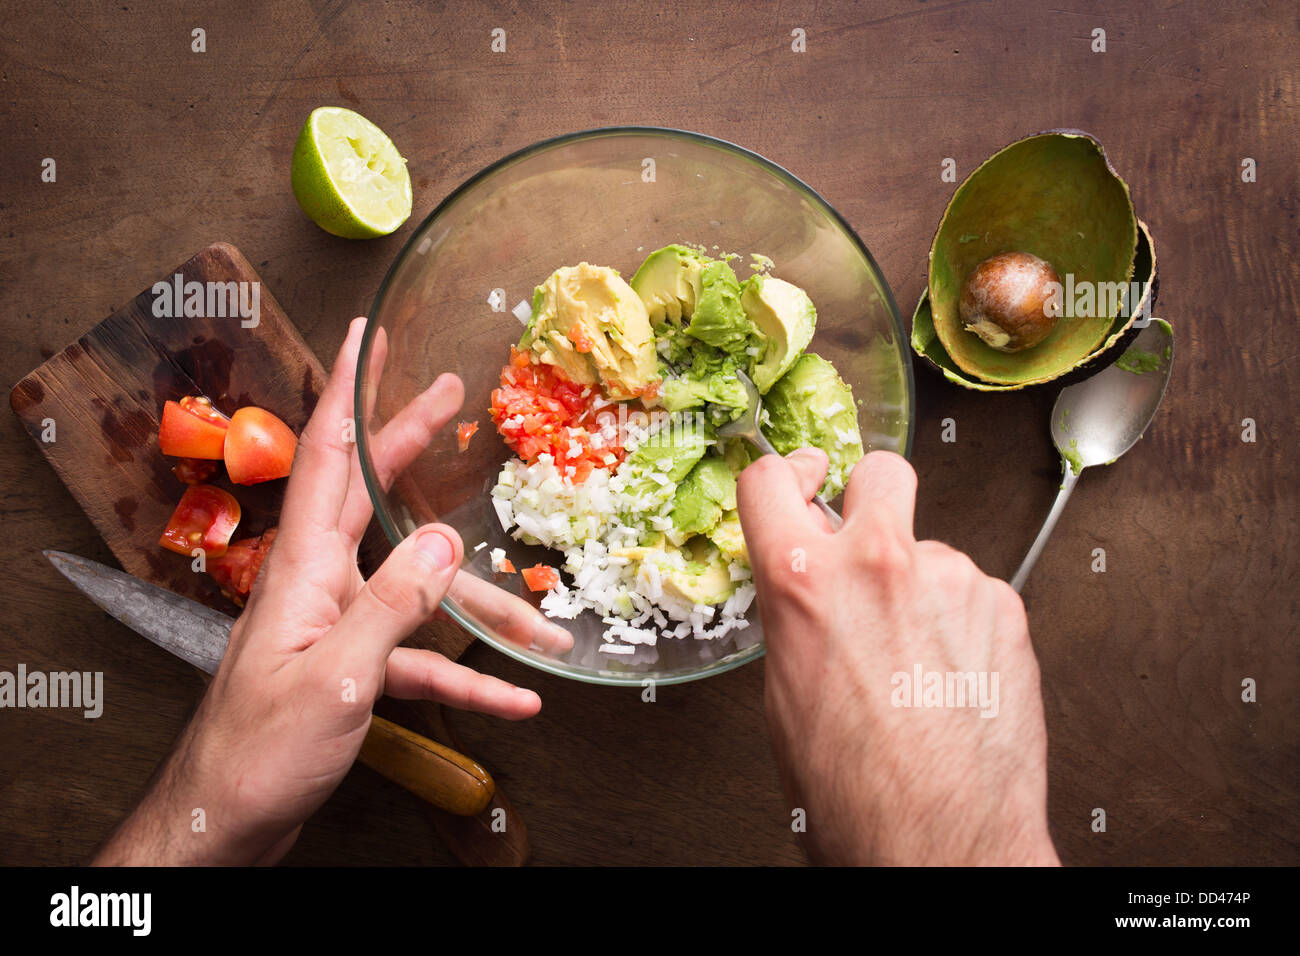 Schiacciare le verdure per fare il guacamole sul tavolo in legno si affacciano Foto Stock